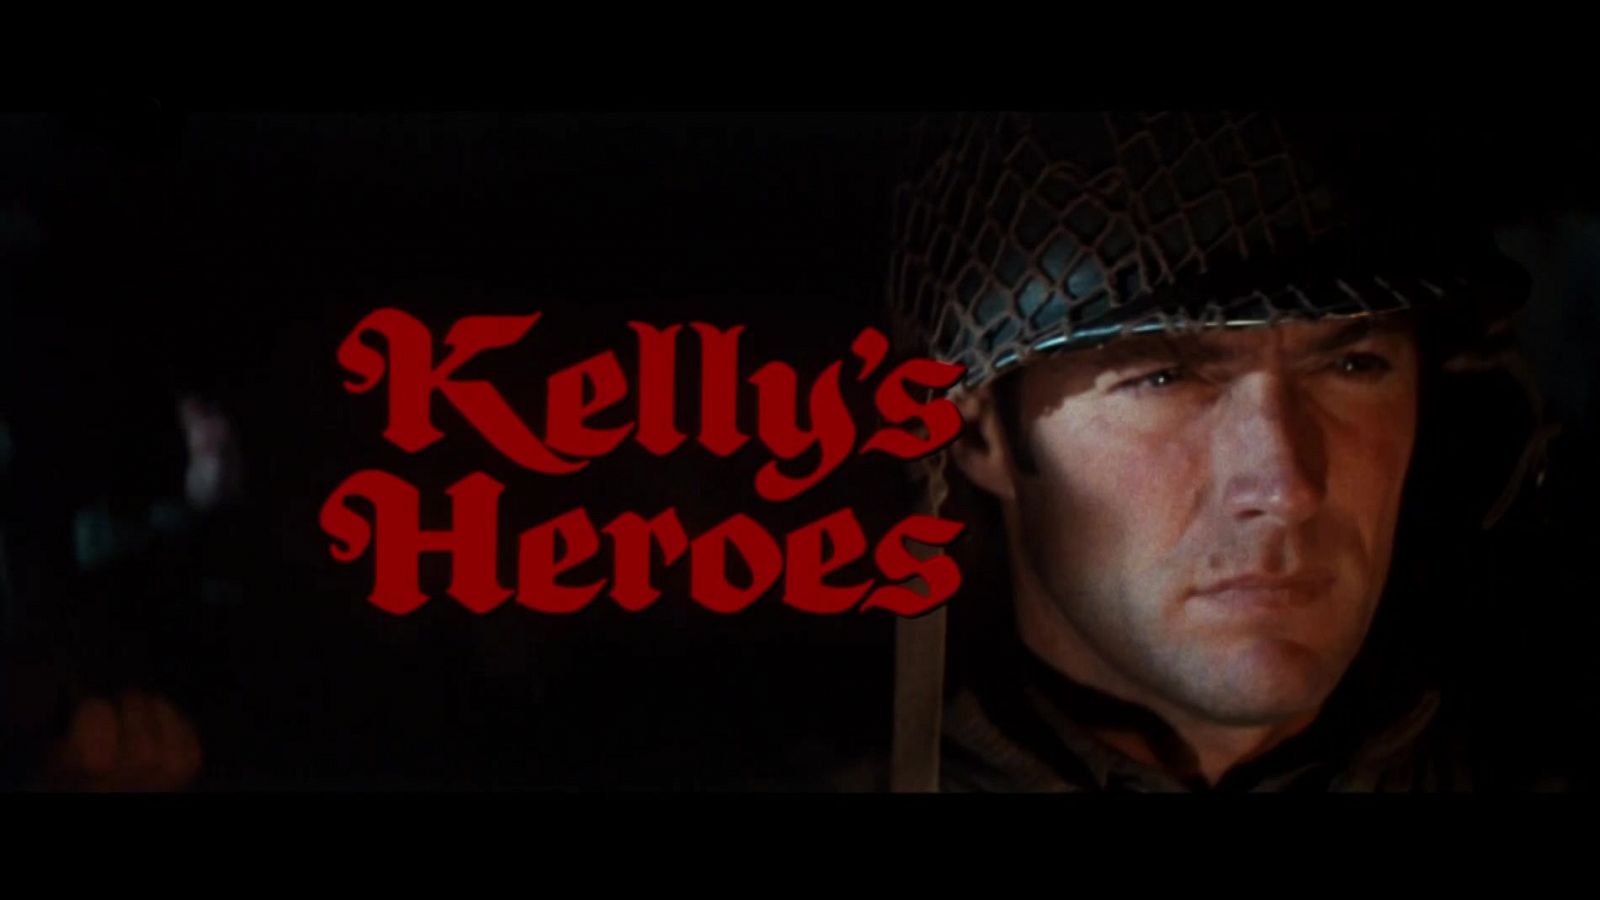 Días de cine clásico - Los violentos de Kelly (Presentación)